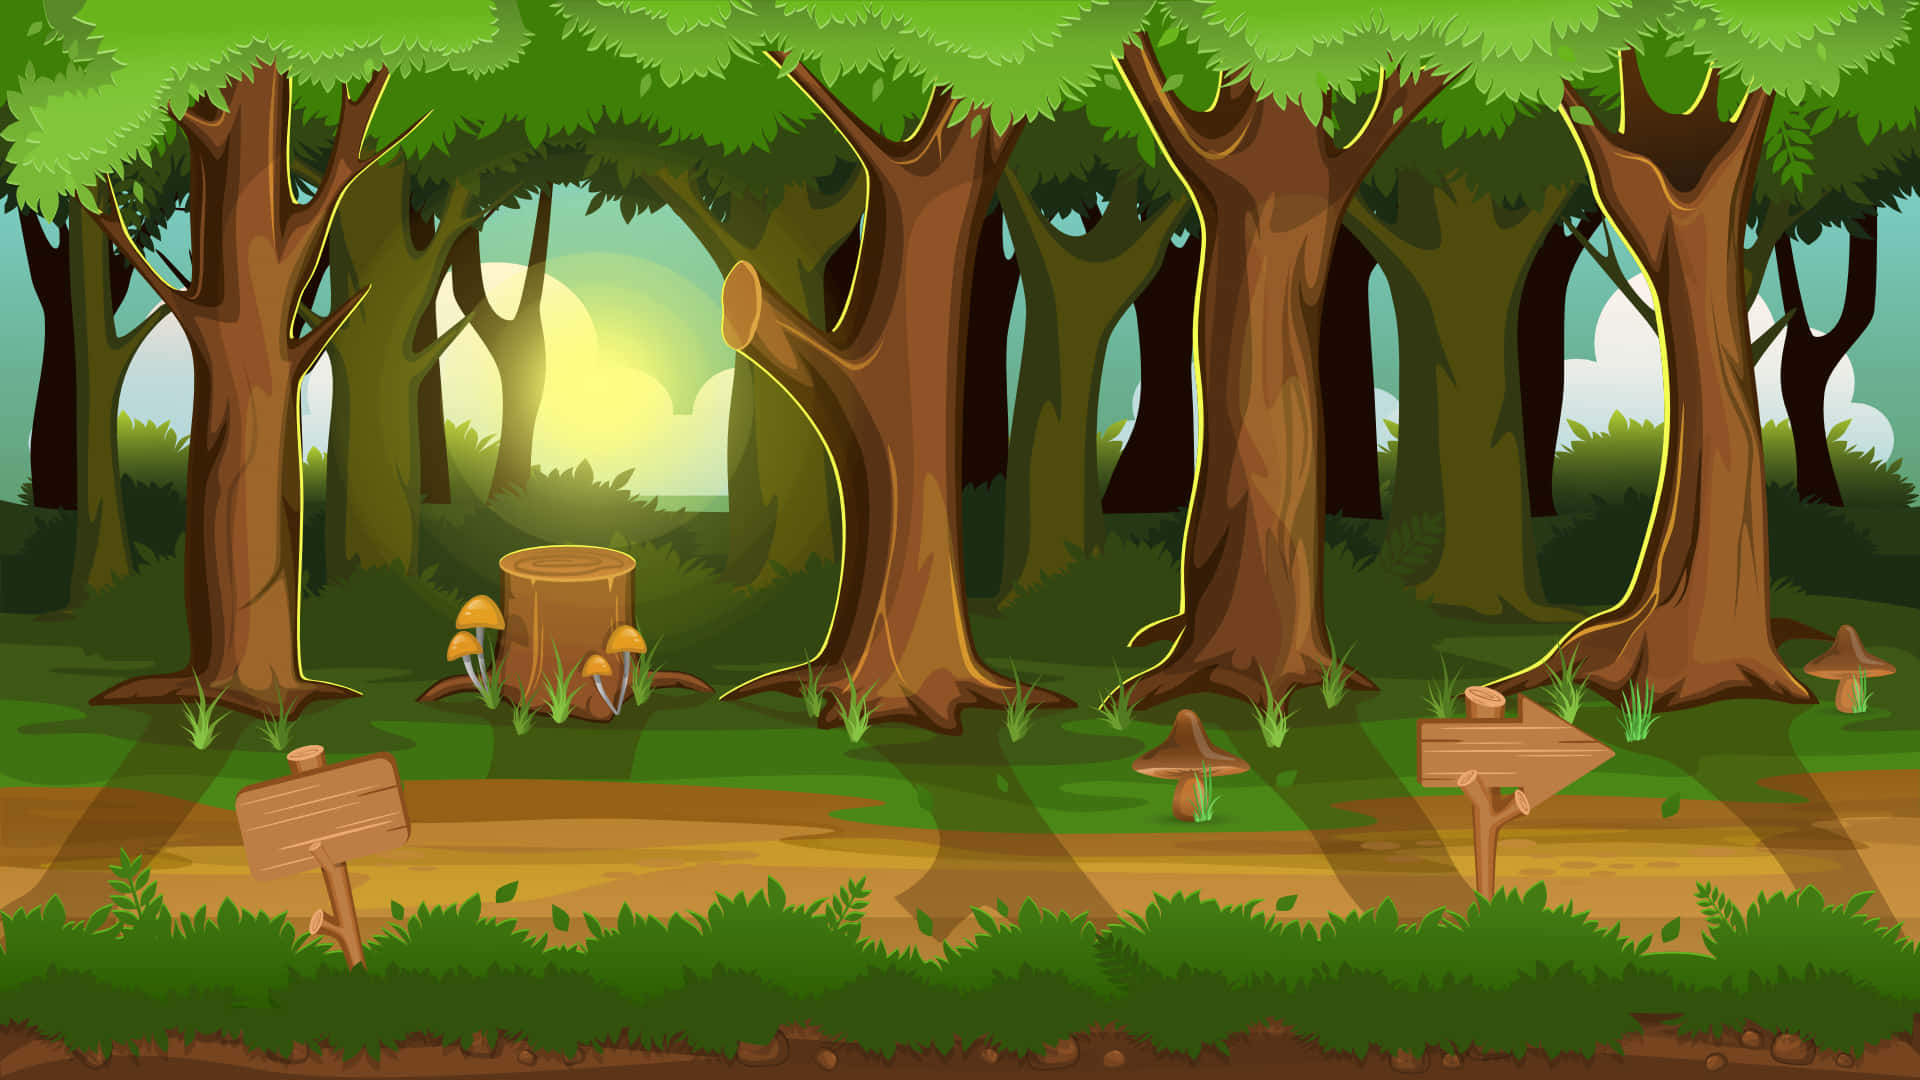 ¡bienvenidosa Cartoon Forest, Una Tierra Mágica Llena De Sorpresas Encantadoras!